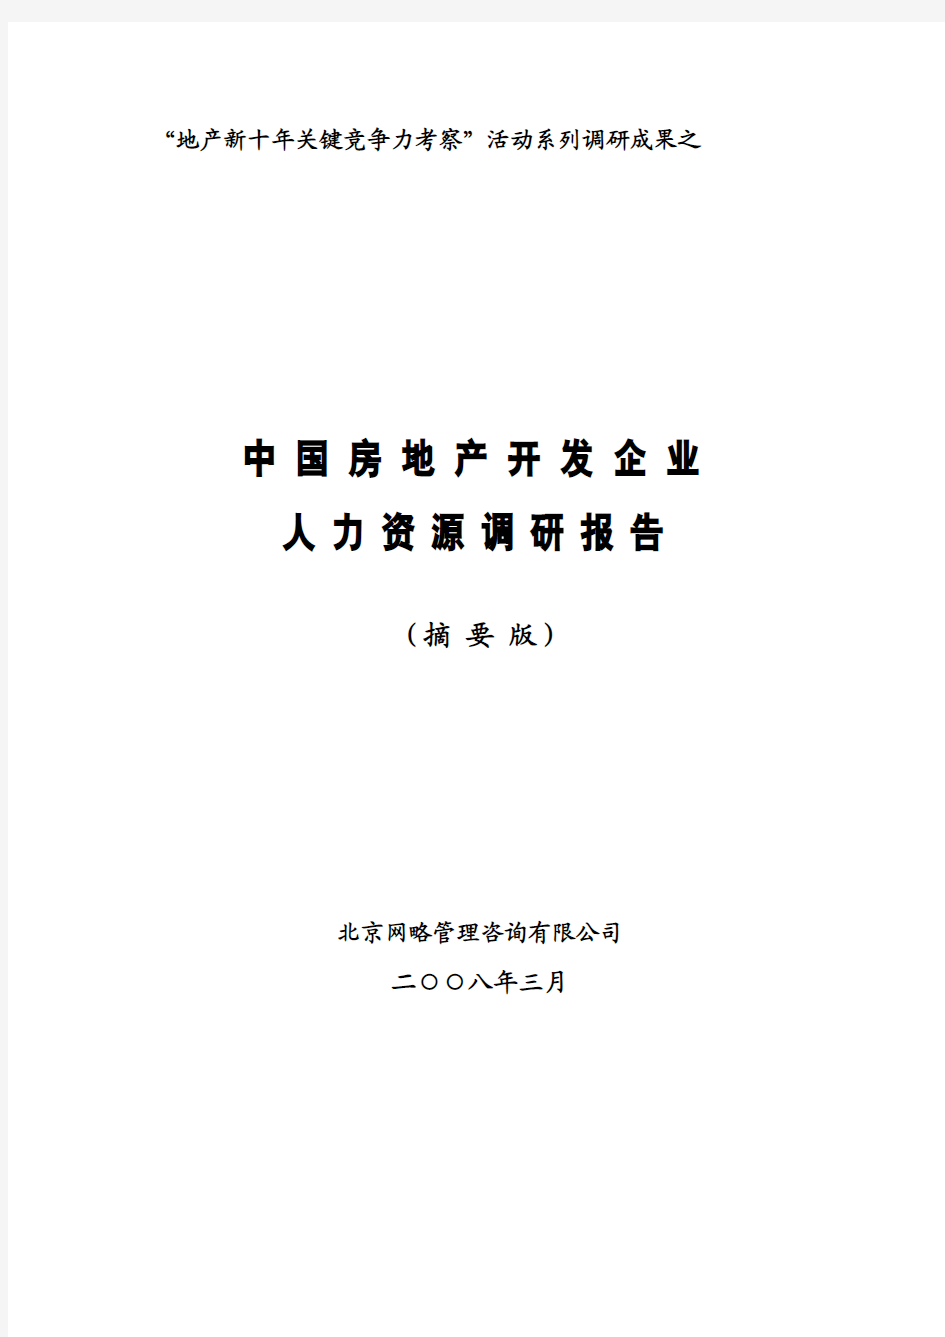 中国房地产开发企业人力资源调研报告(摘要版)